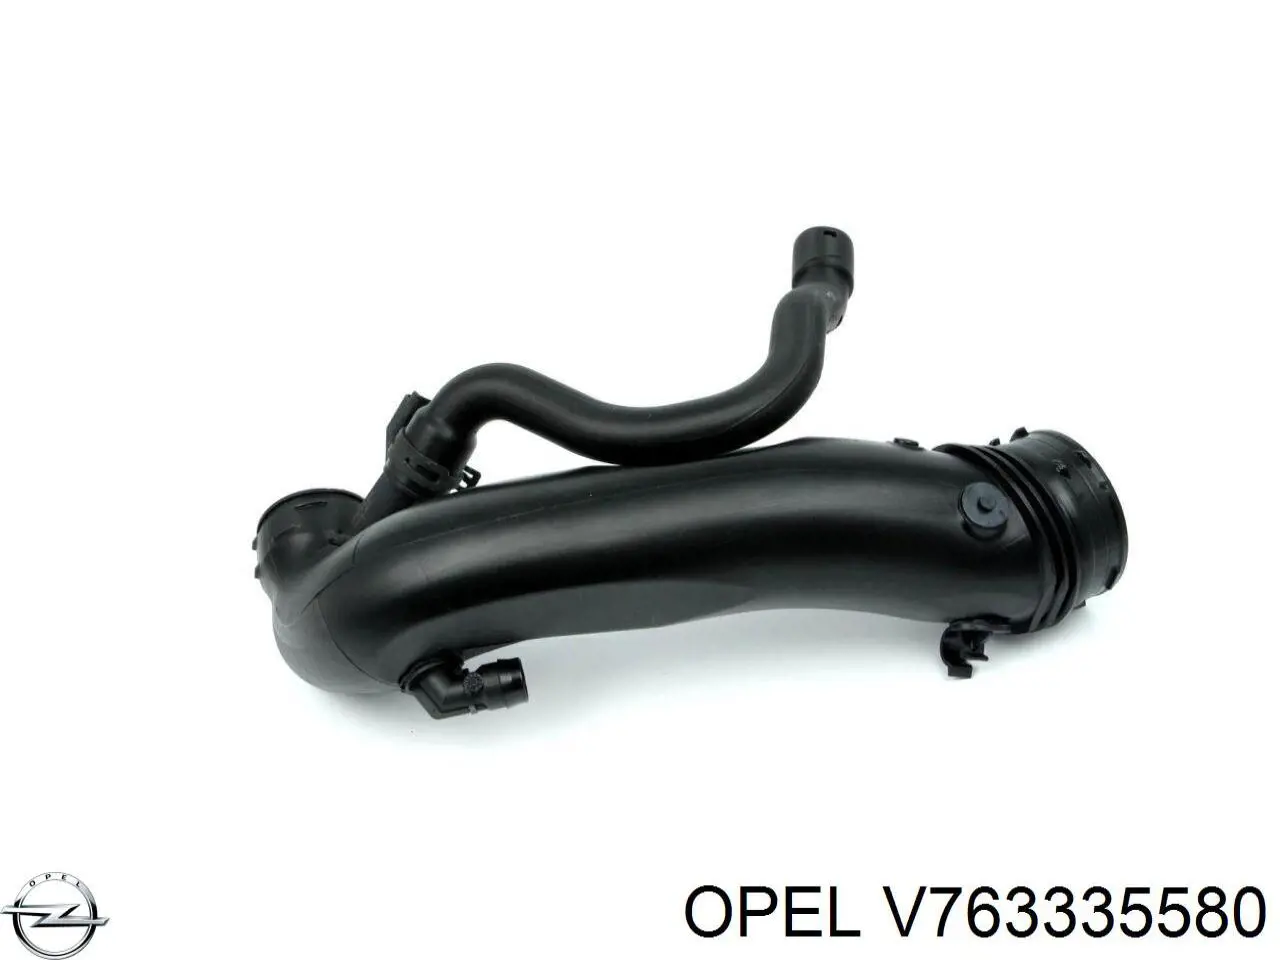 V763335580 Opel tubo flexible de aire de sobrealimentación, a turbina